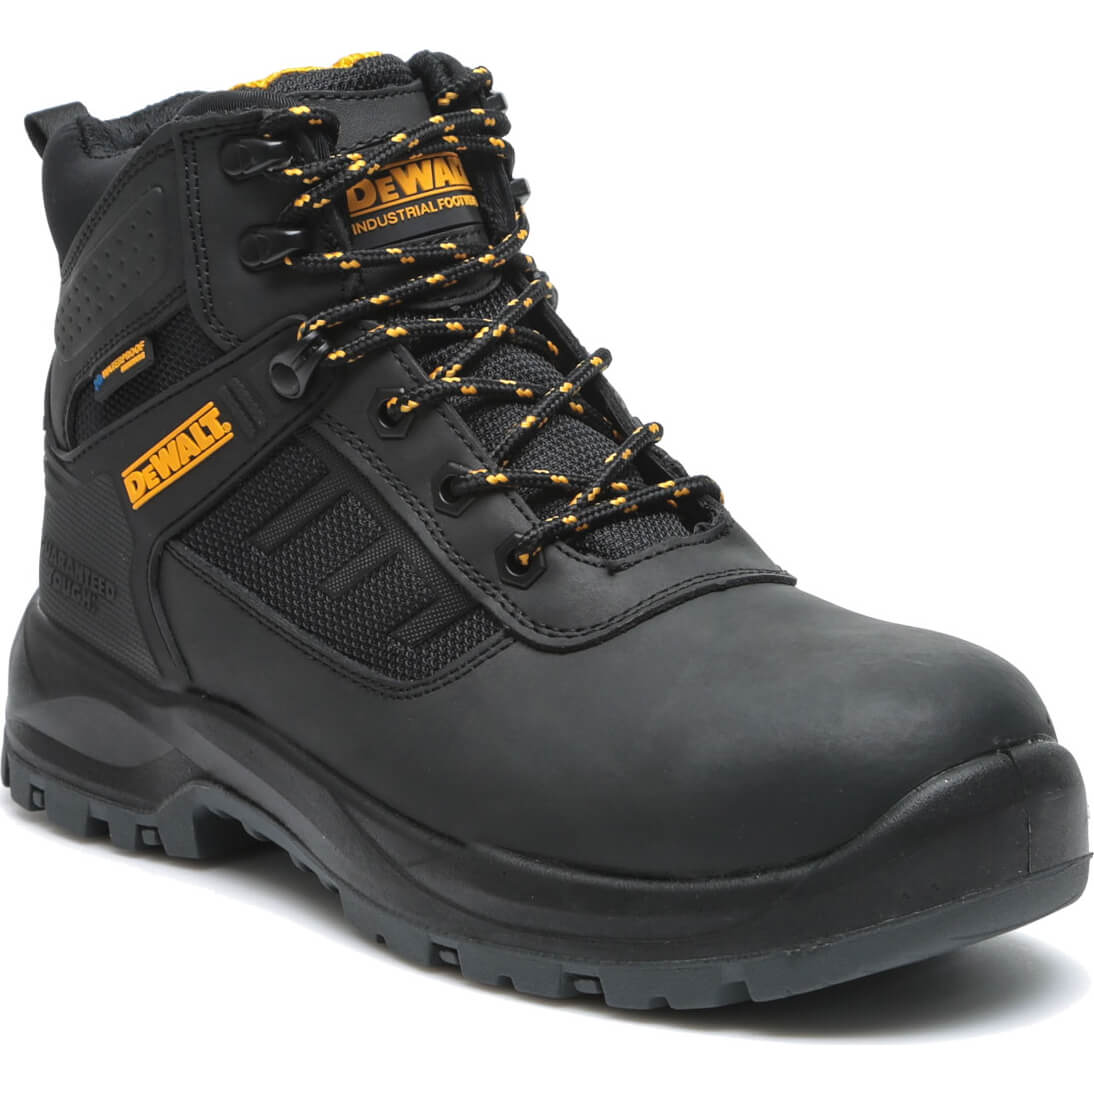 DeWalt Douglas Waterproof Safety Boots Black Size 6